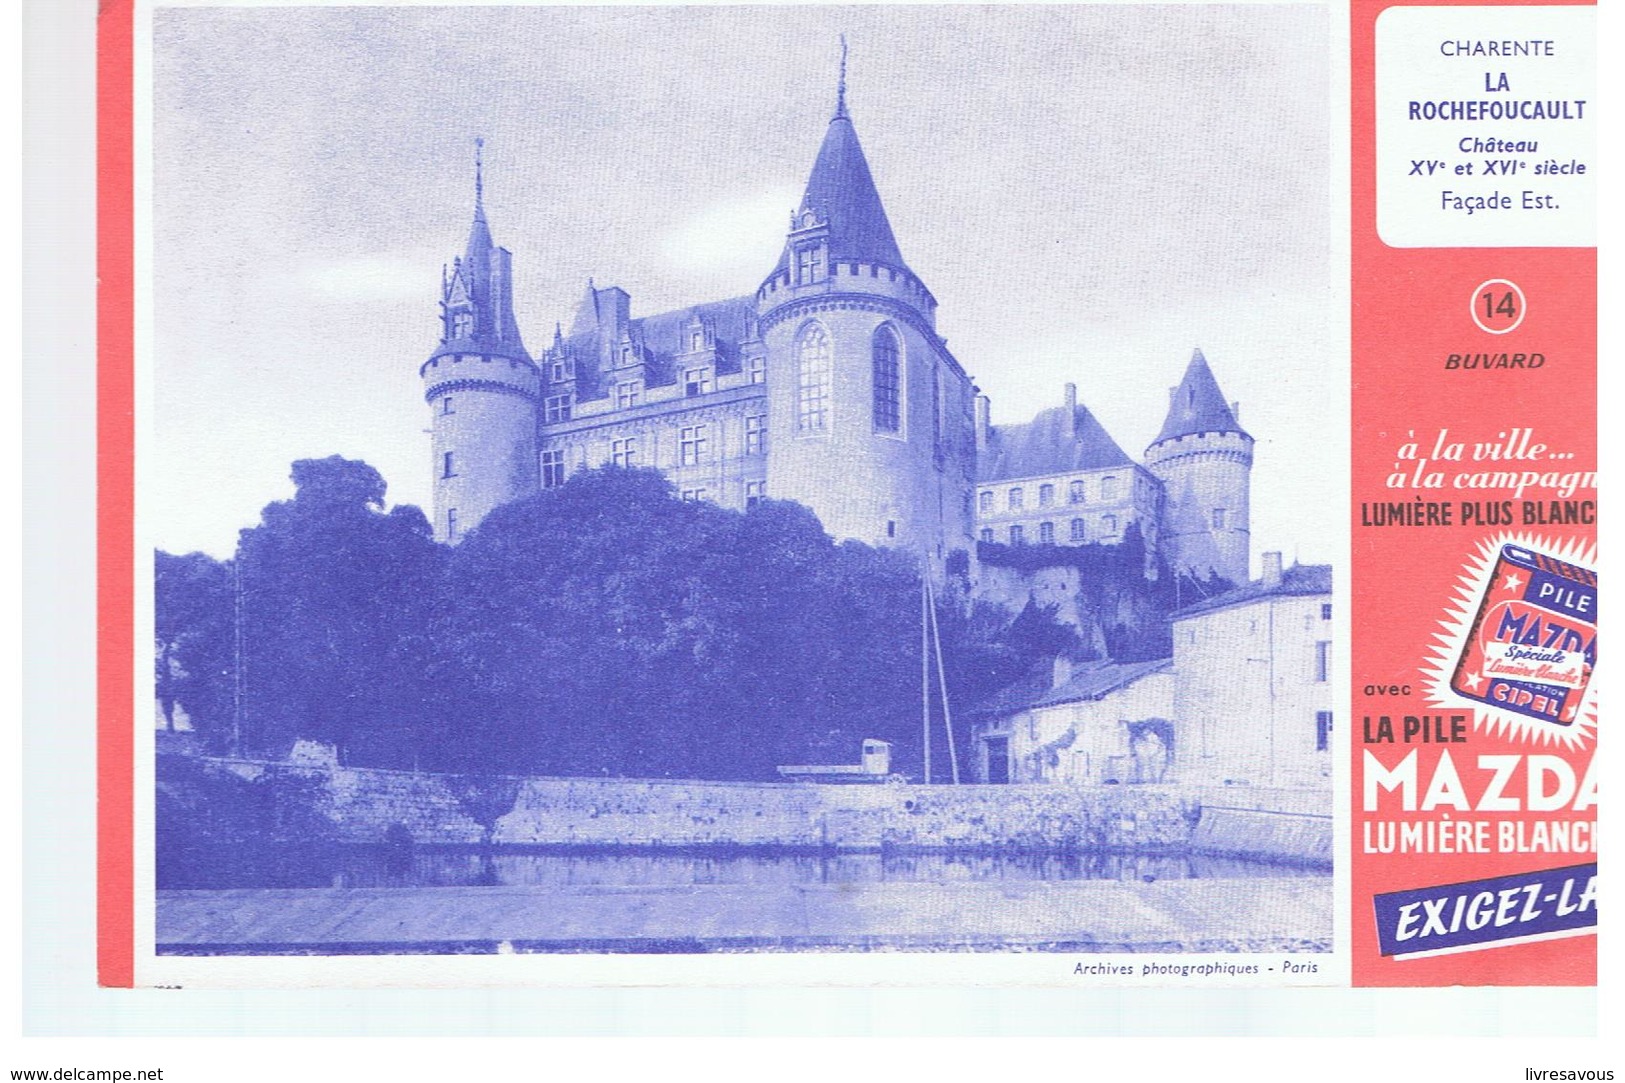 Buvard MAZDA Charente LA ROCHEFOUCAULT Château Début XV & XVI ème Siècle Façade Est - Piles